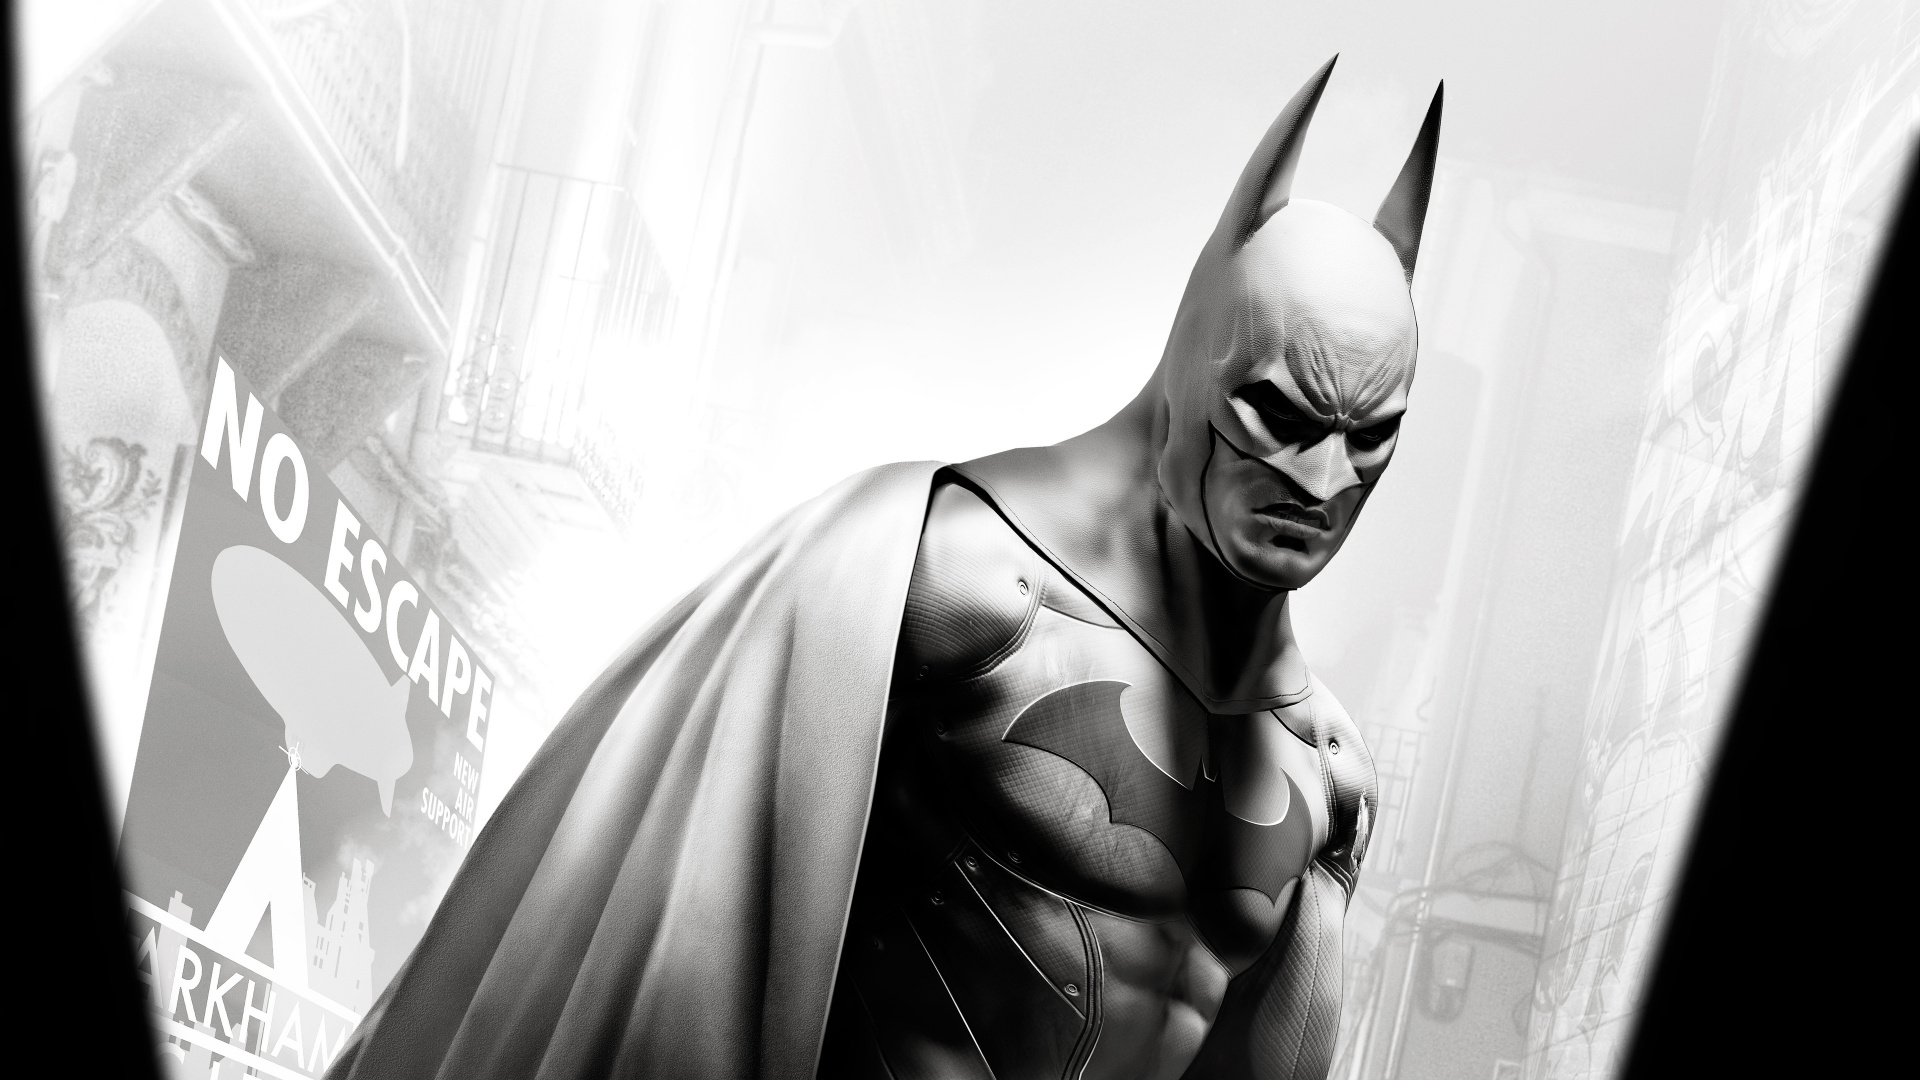 HD wallpaper: Batman, Batman: Arkham Origins, video games